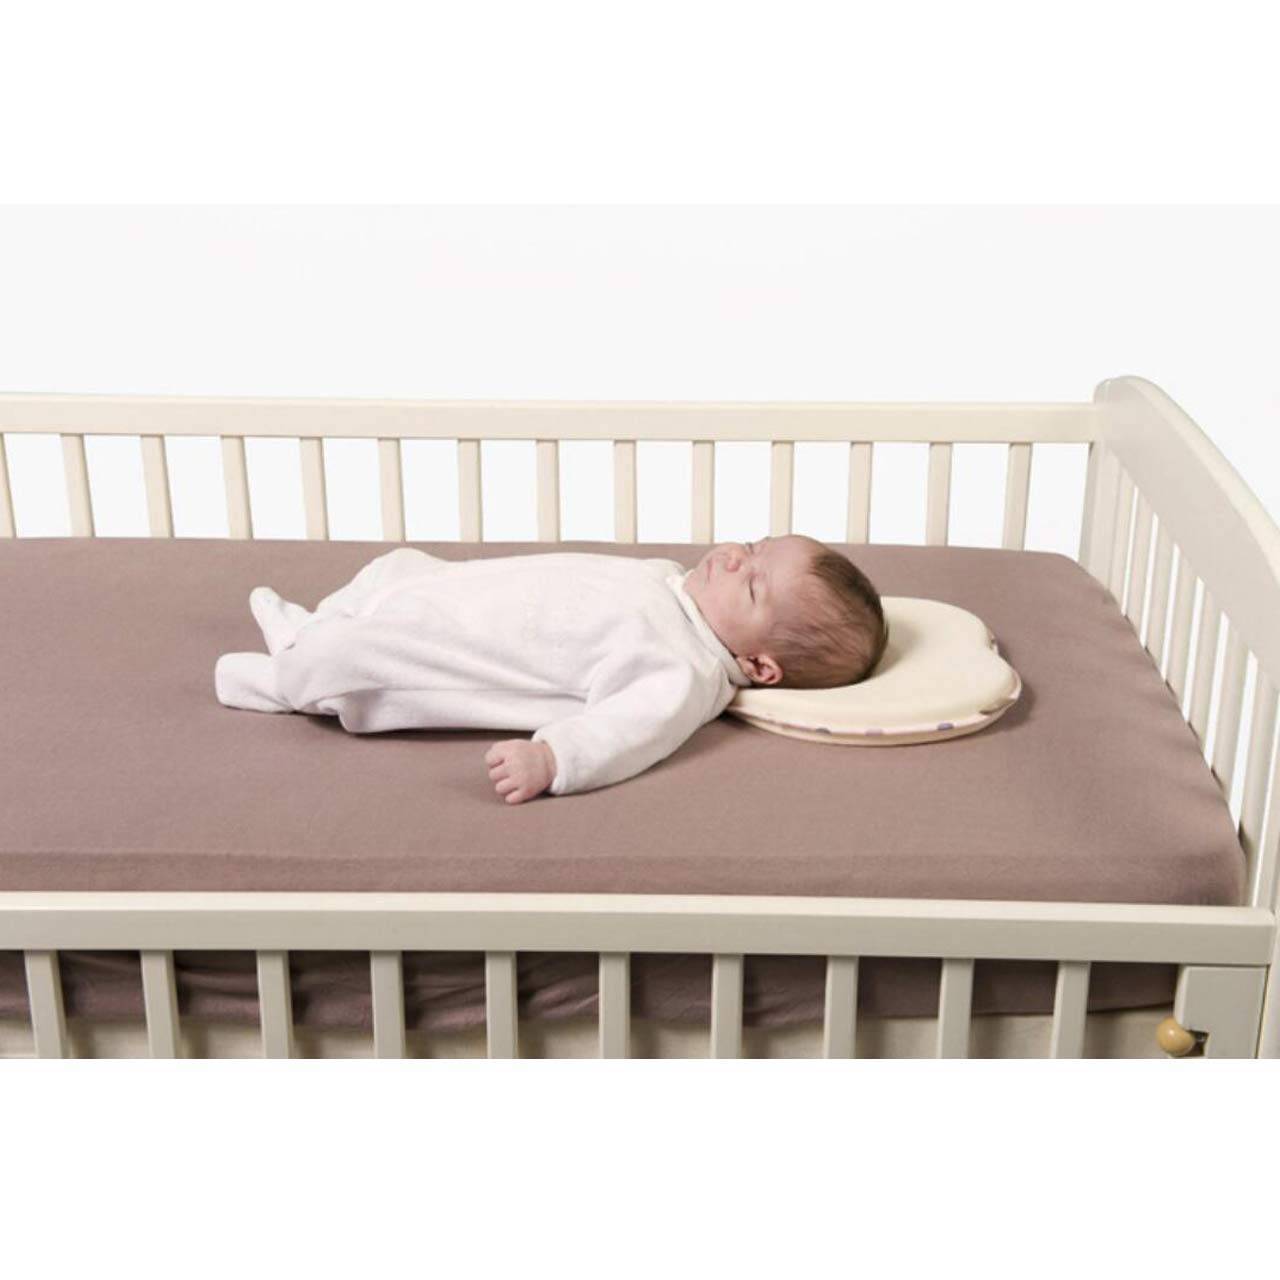 Со скольки спать на подушке ребенку